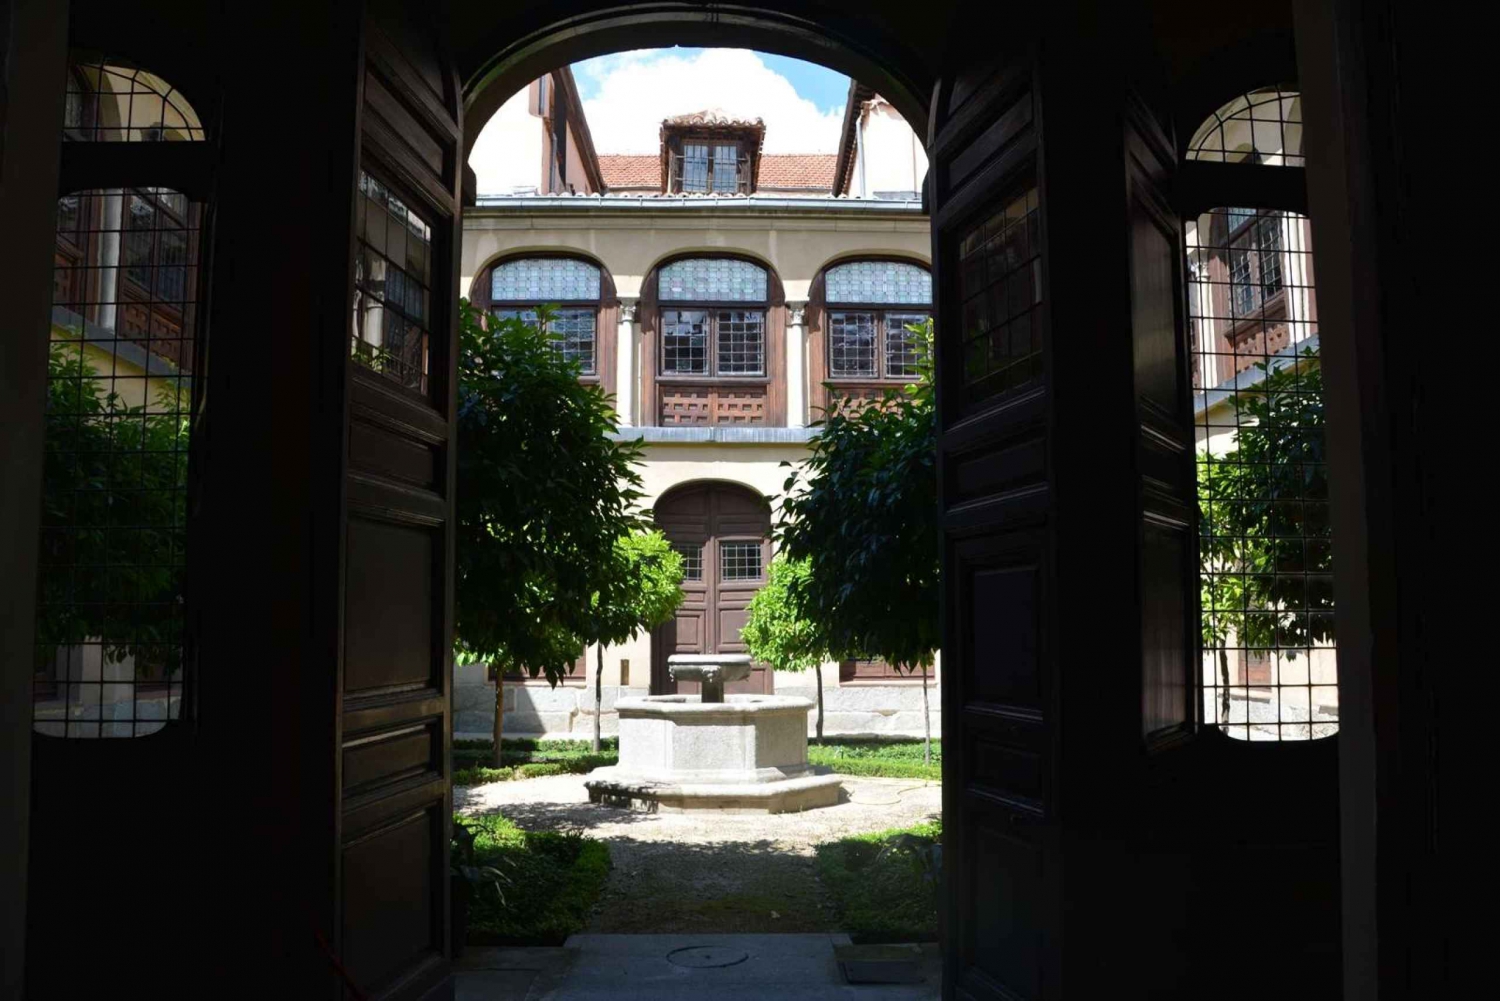 Madryt: Klasztor Descalzas Reales - wycieczka z biletami